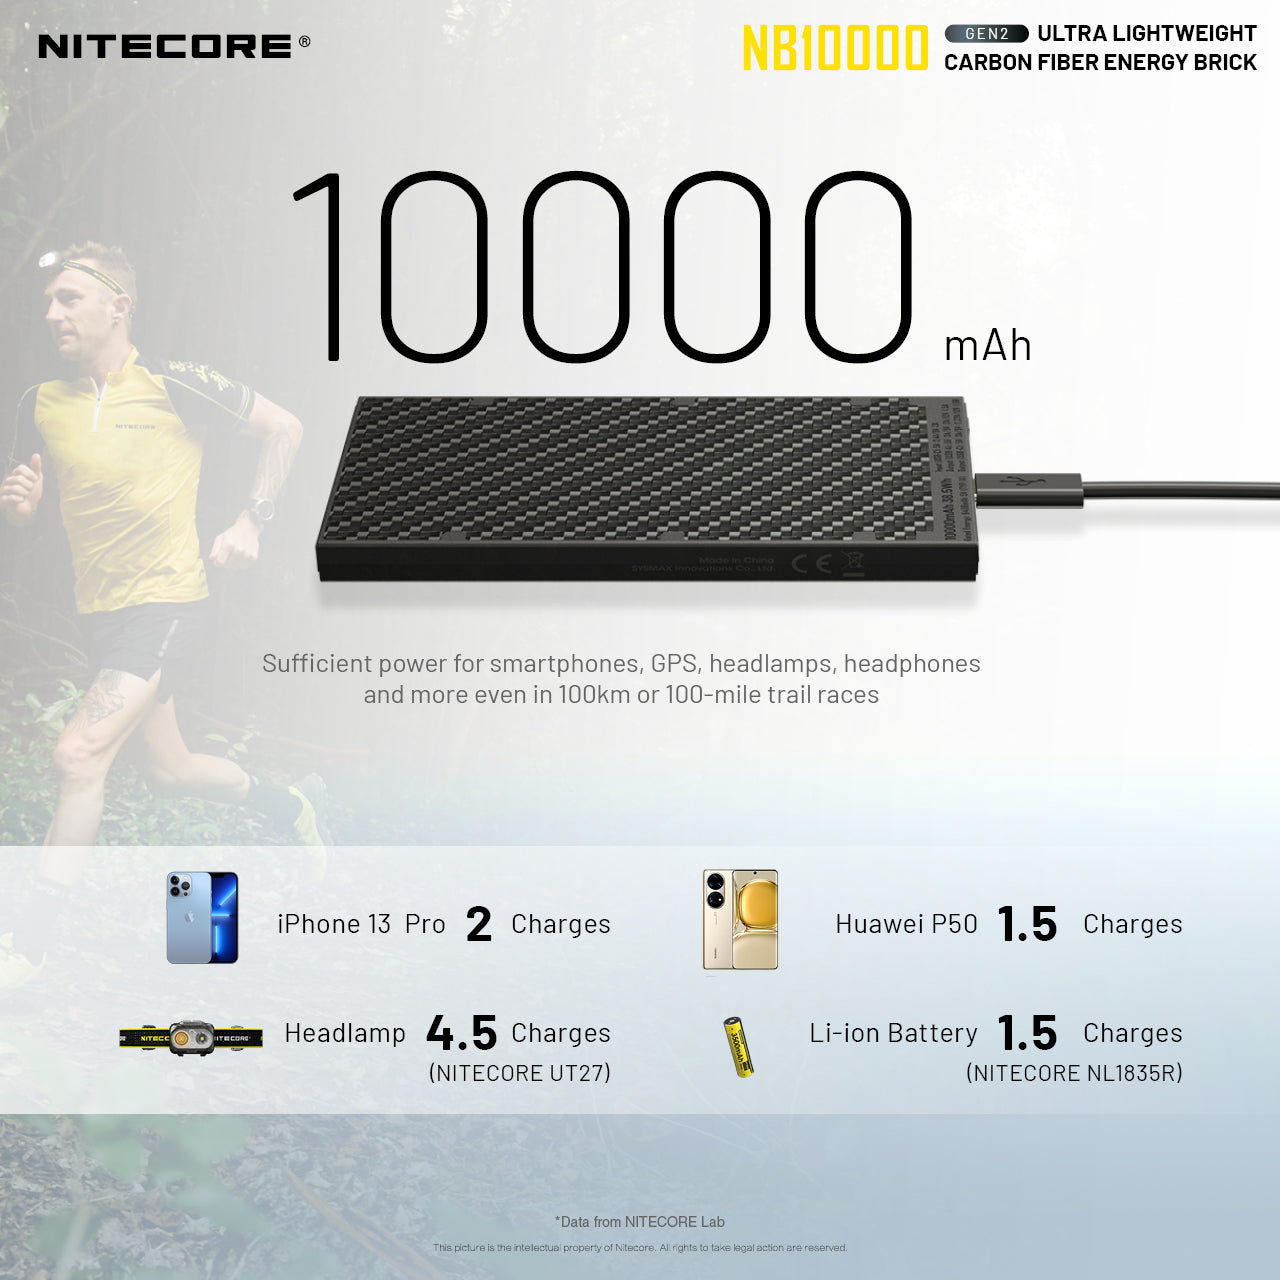 NITECORE NB1000 CARBON FIBRE 10,000 MAH POWERBANK